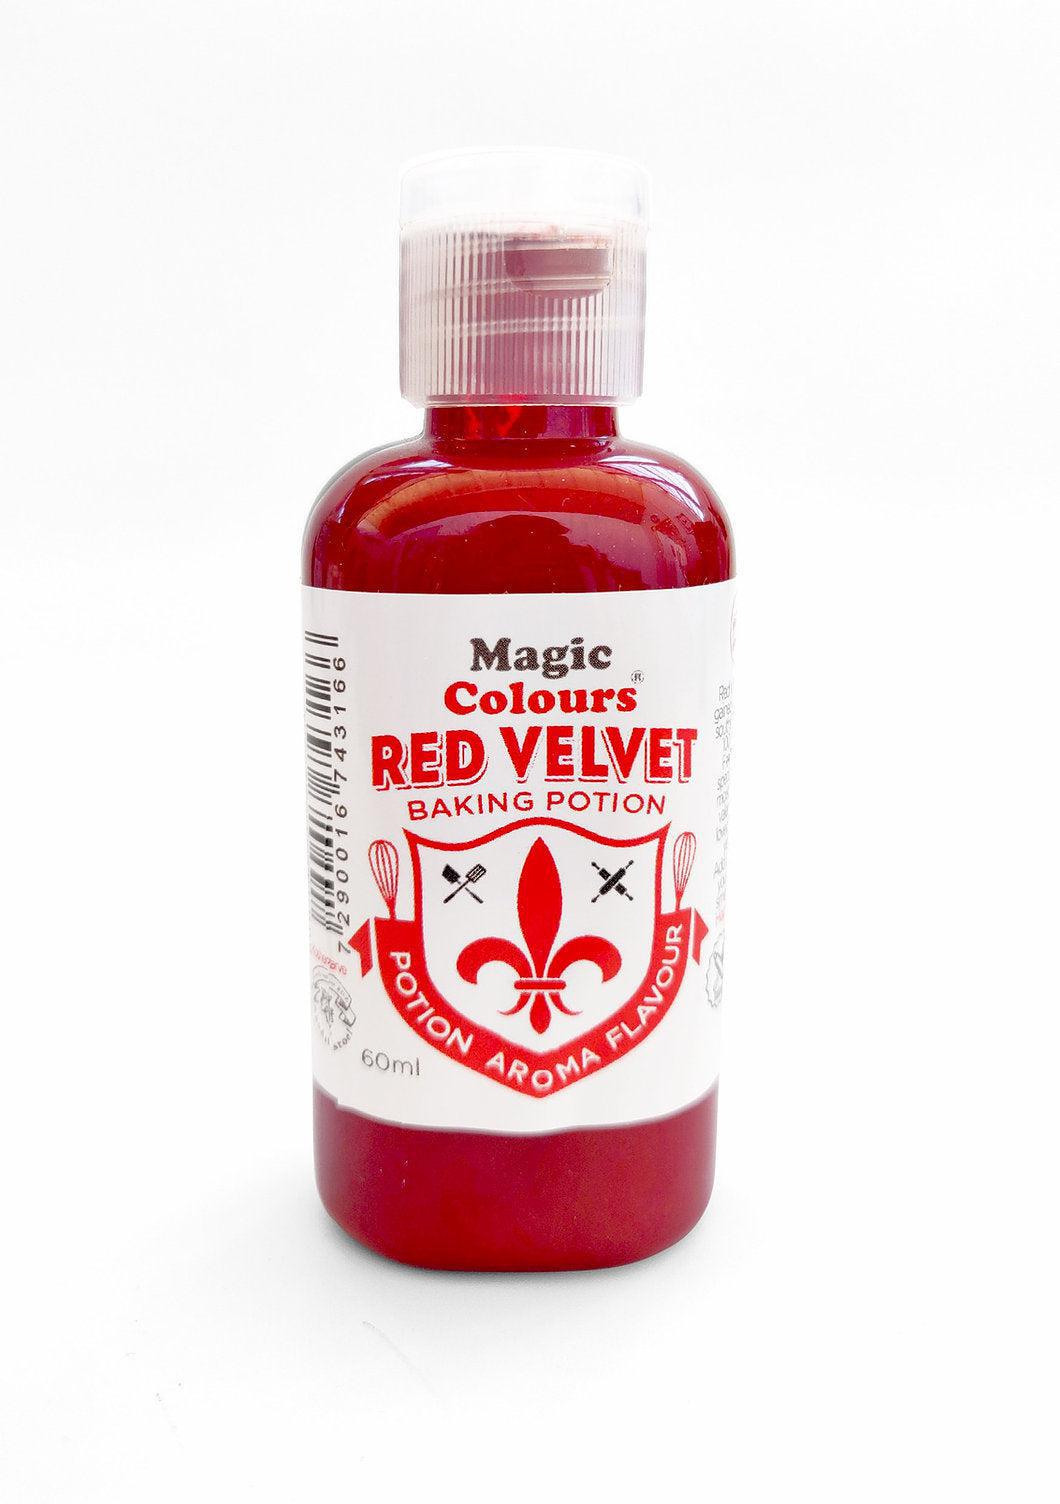 Χρώμα & άρωμα για red velvet cake της Magic Colours.